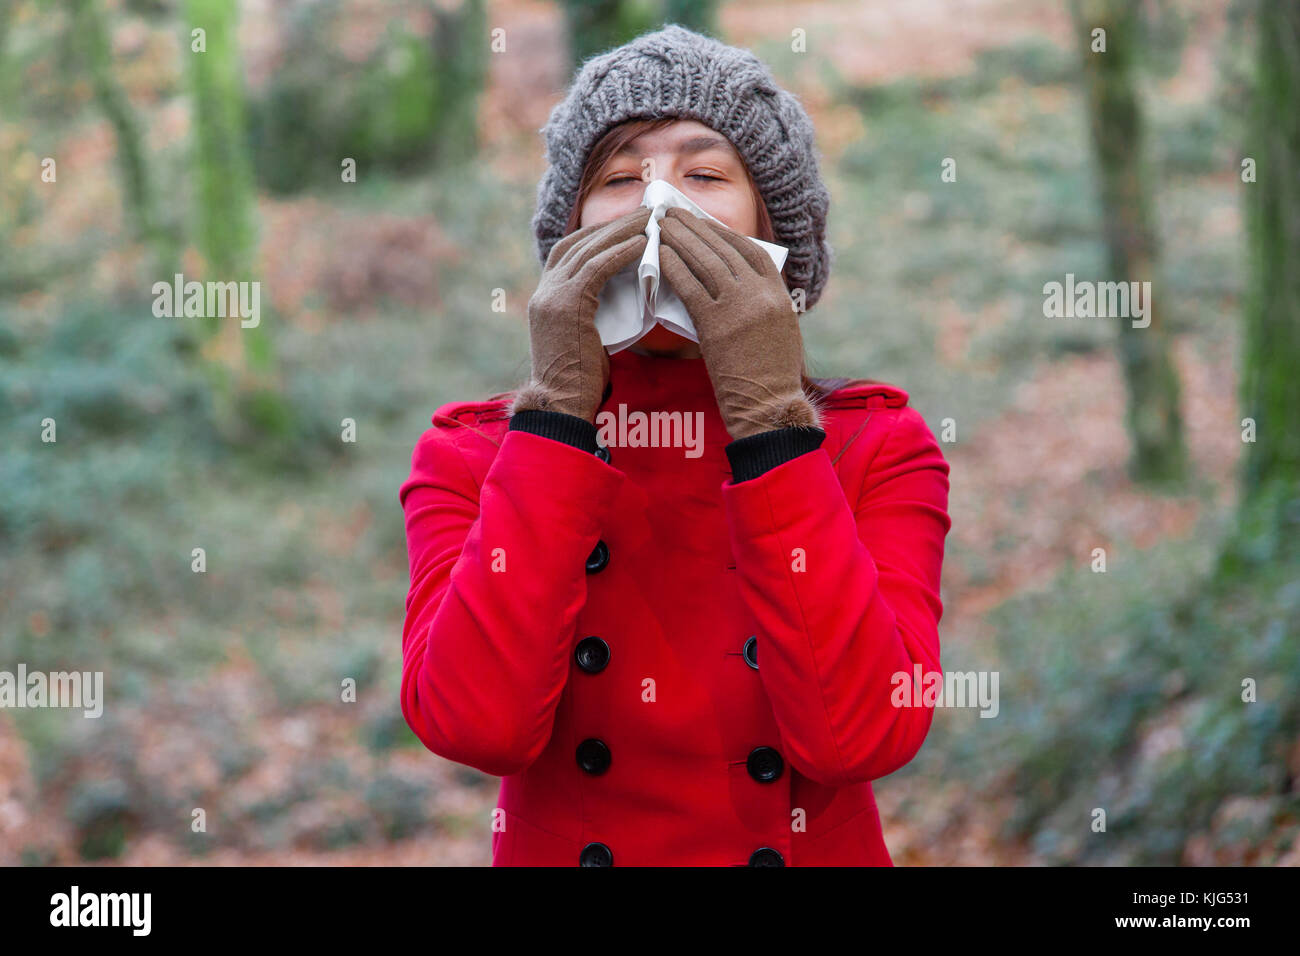 Junge Frau mit Erkältung oder Grippe blasen Nase, Niesen auf weißem Papier Taschentuch in Wald trägt einen roten Mantel oder Jacke und Mütze Stockfoto